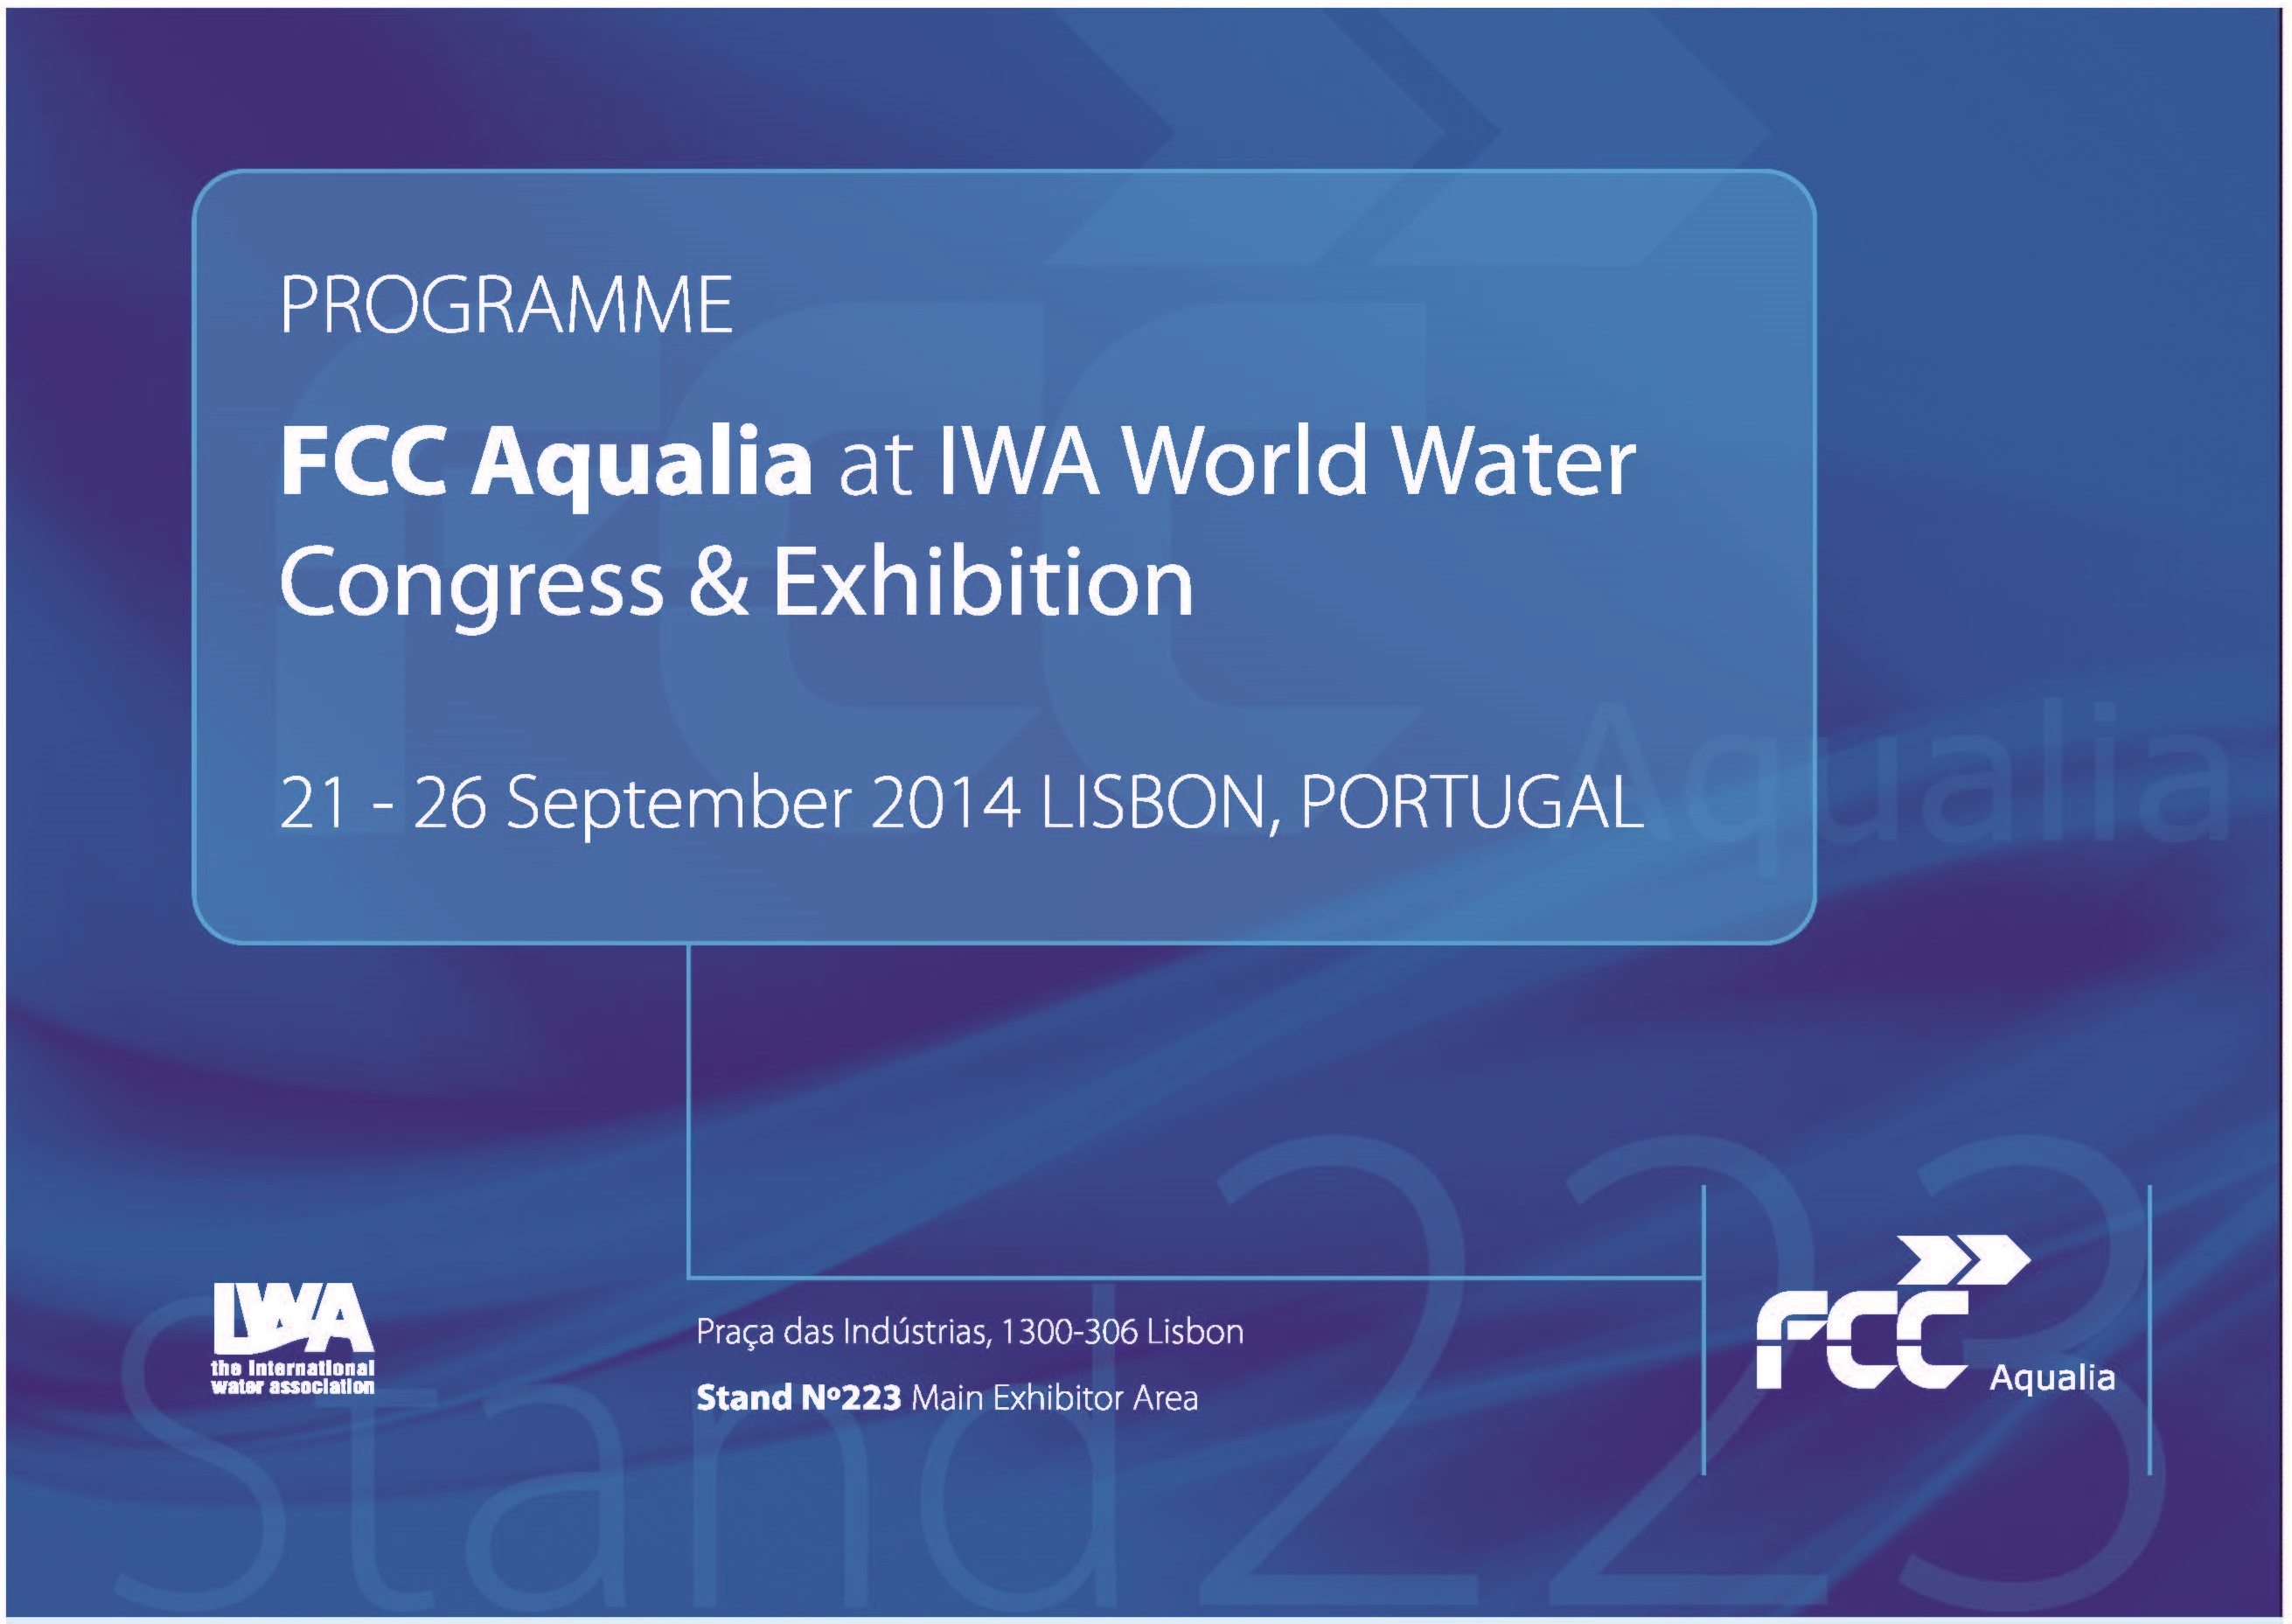 Els desenvolupaments tecnològics d’ FCC Aqualia protagonistes al Congrés IWA 2014